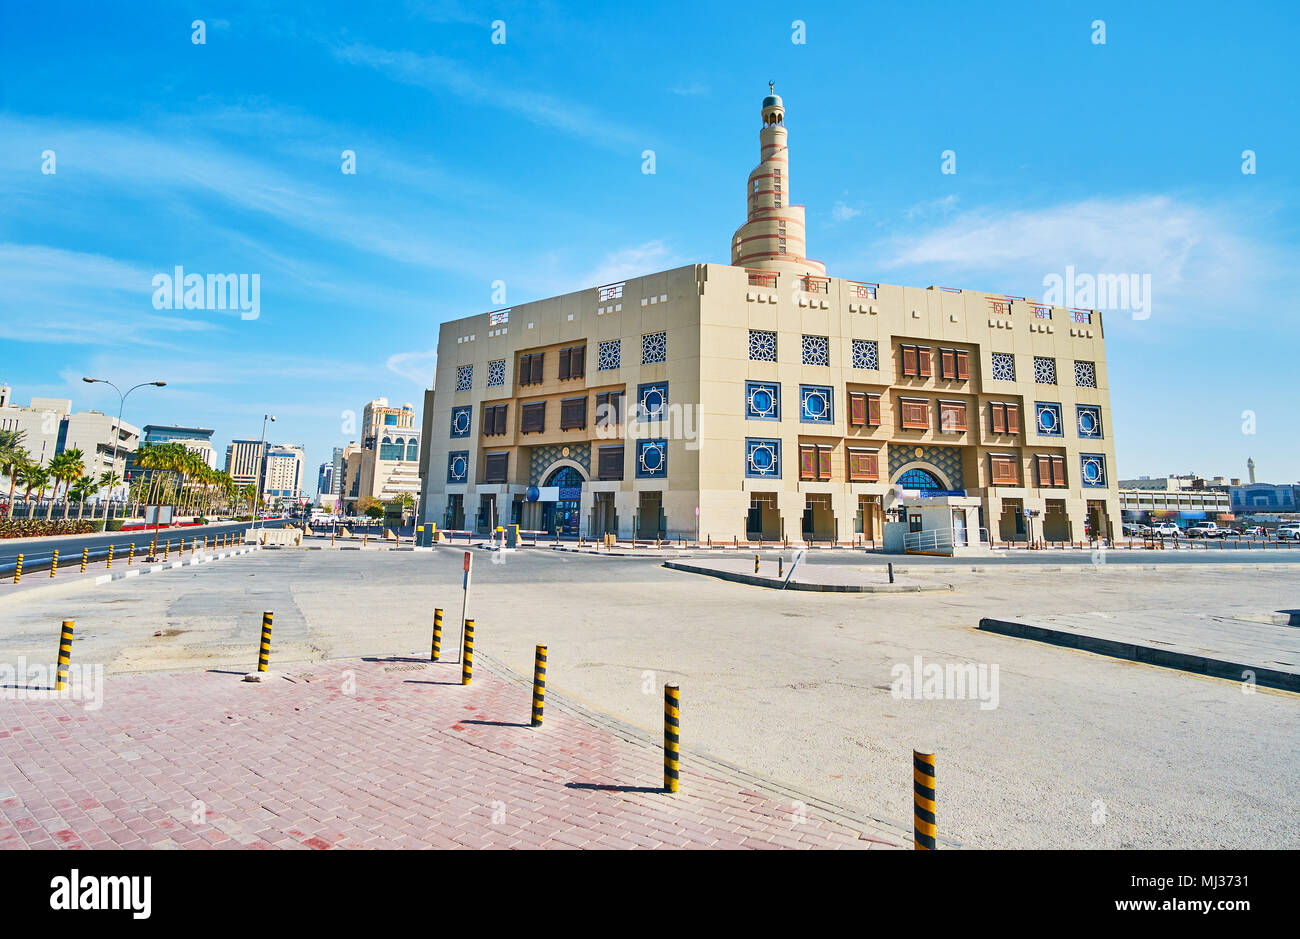 Le bâtiment de Fanar Centre culturel islamique, situé à côté de l'Souq Waqif et célèbre pour l'architecture exceptionnelle de sa mosquée, Doha, Qatar. Banque D'Images